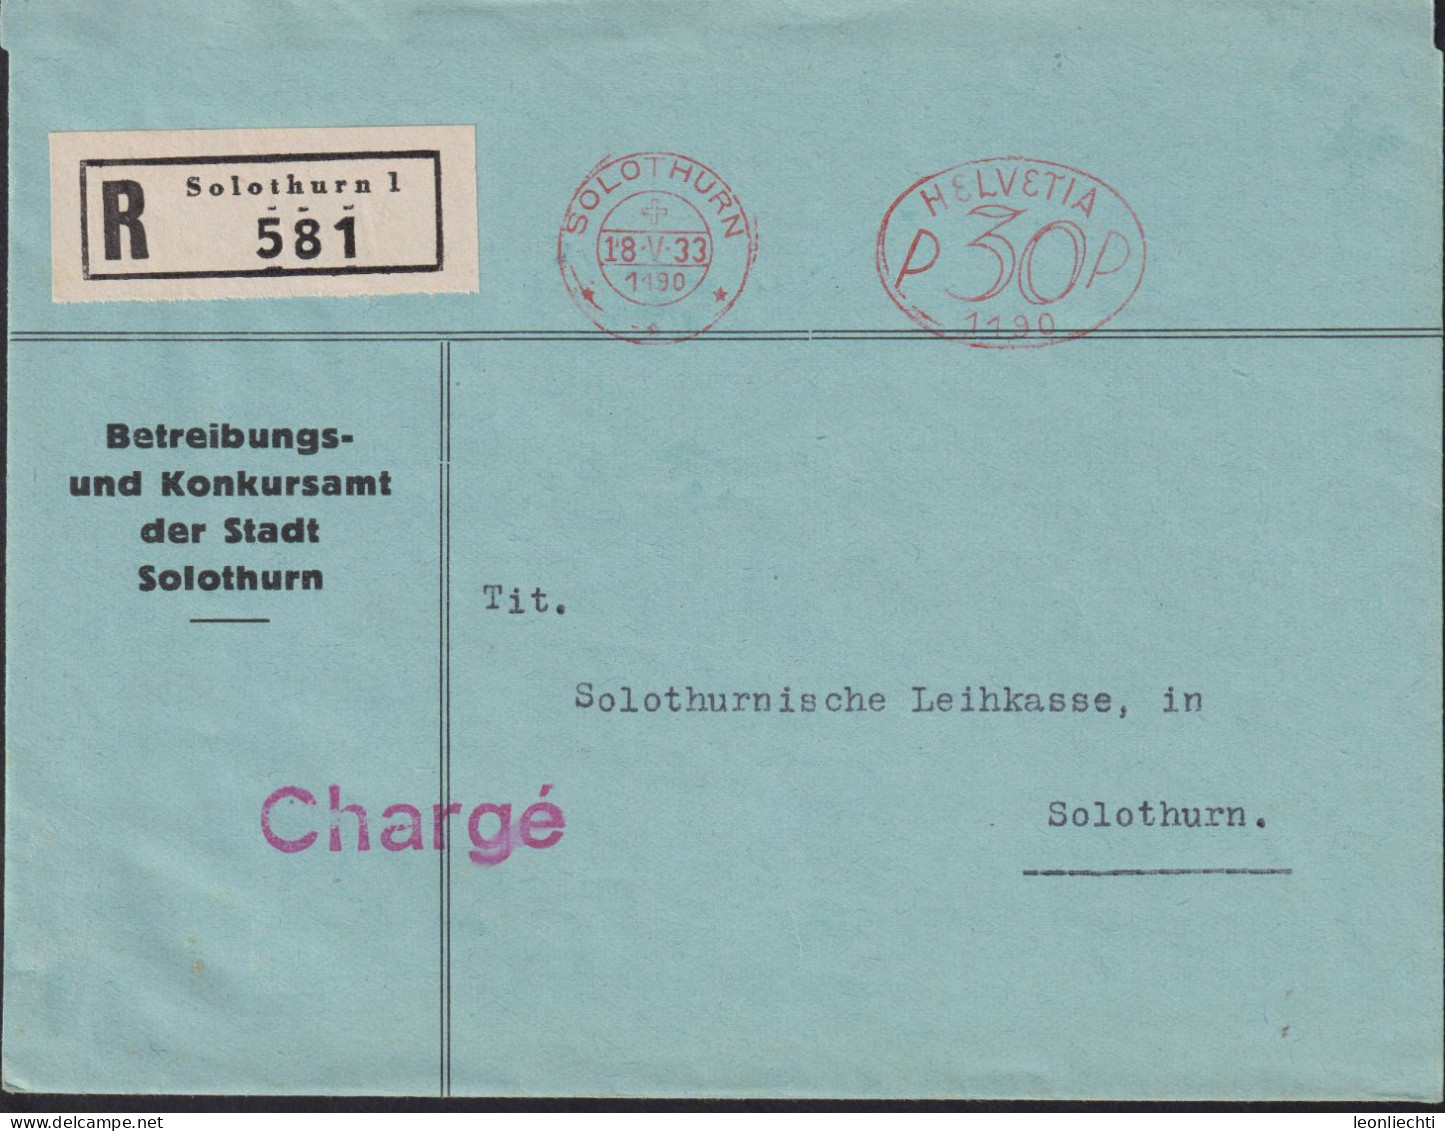 1933 Schweiz, R-Brief (FraMA)  Solothurn + HELVETIA P 30 1190, Betreibungs U. Konkursamt Der Stadt Solothurn - Frankeermachinen